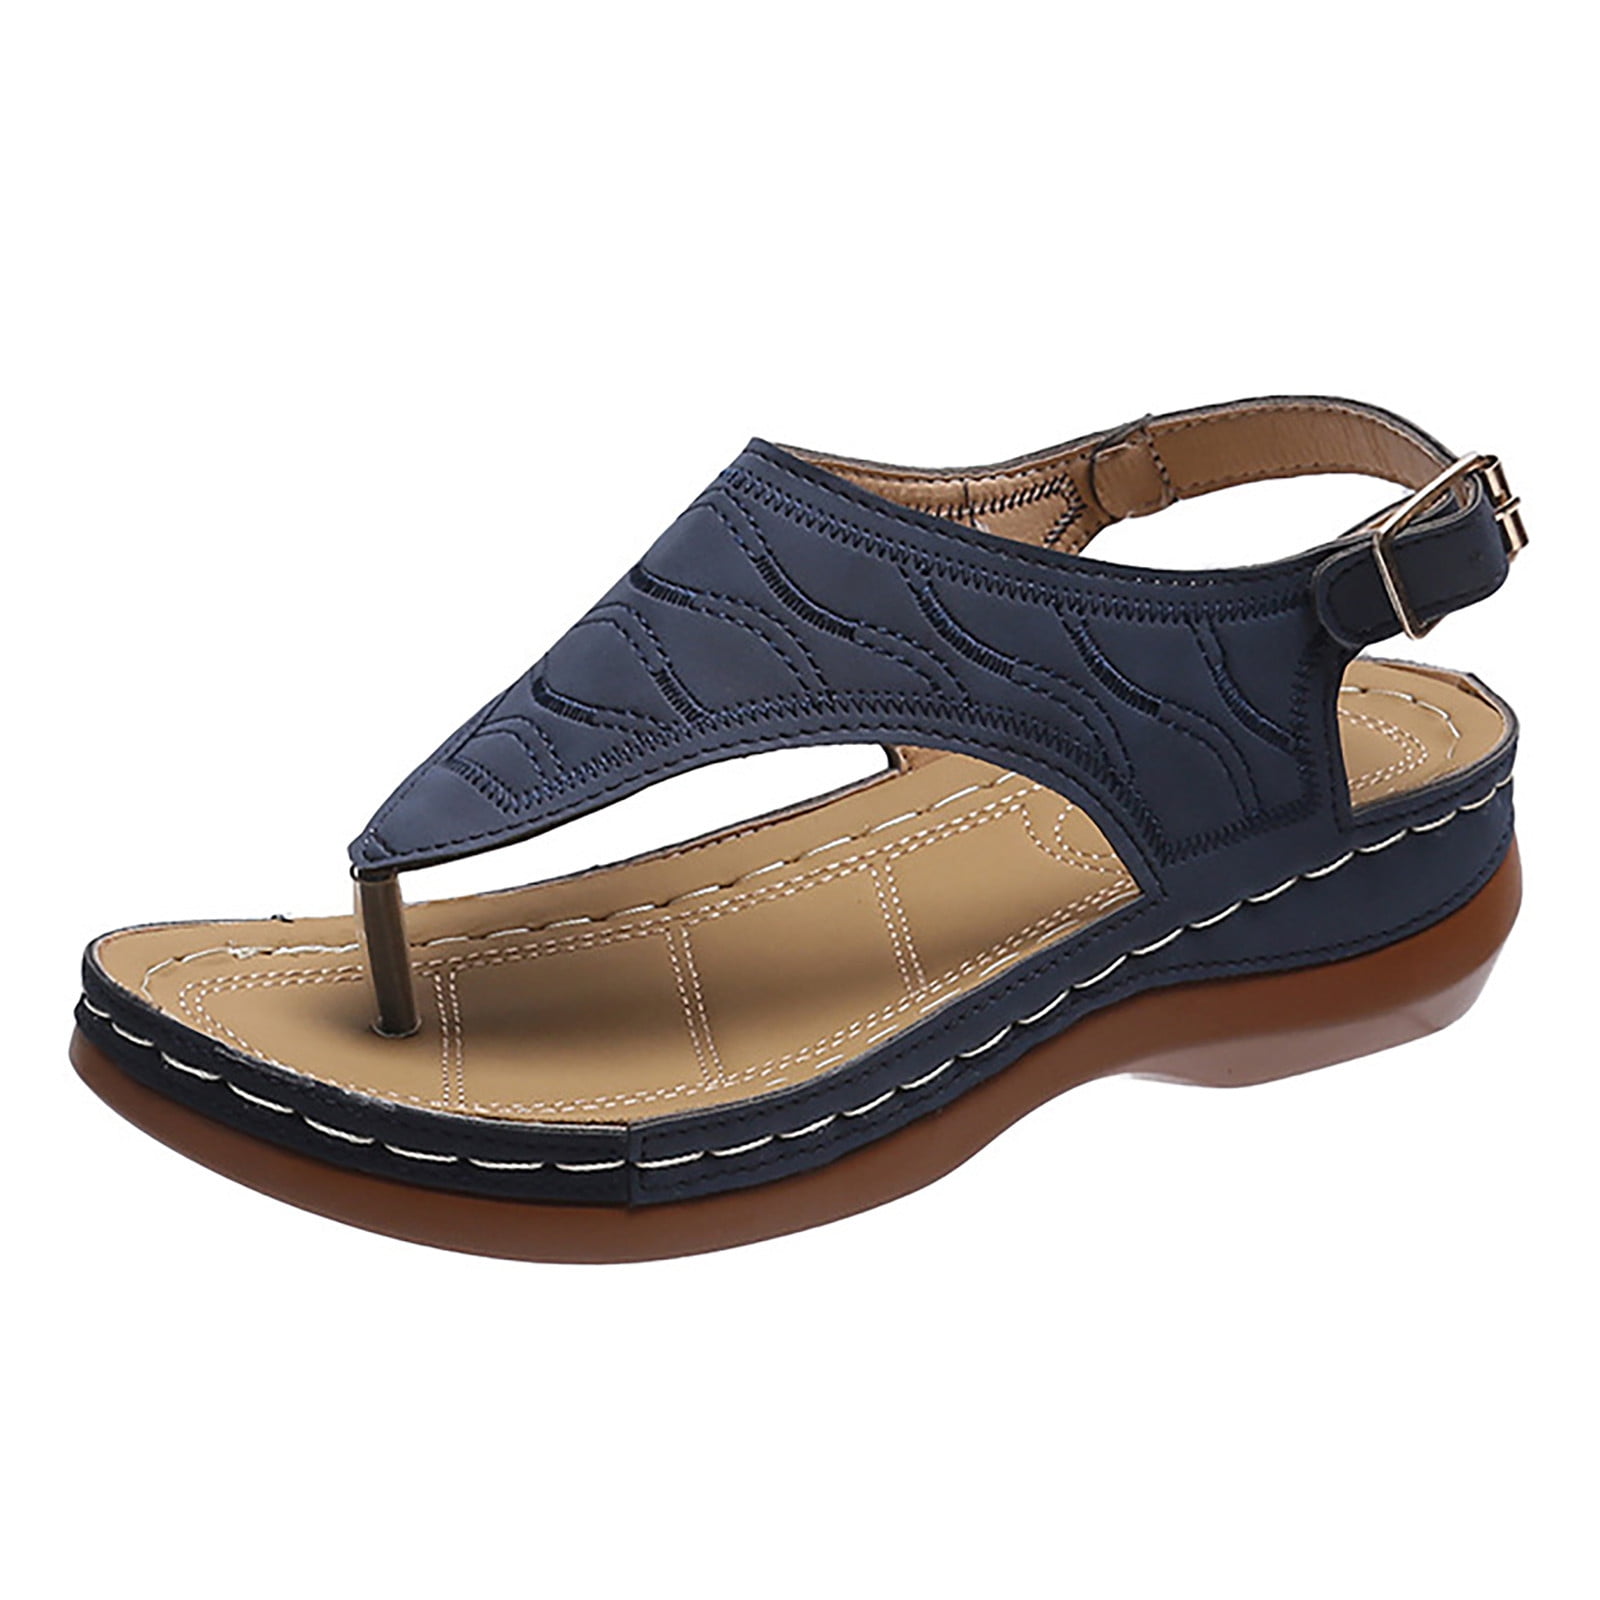 Slide Sandals Women's Wedge Heel Clip Toe Platform Solid Comfortable ...